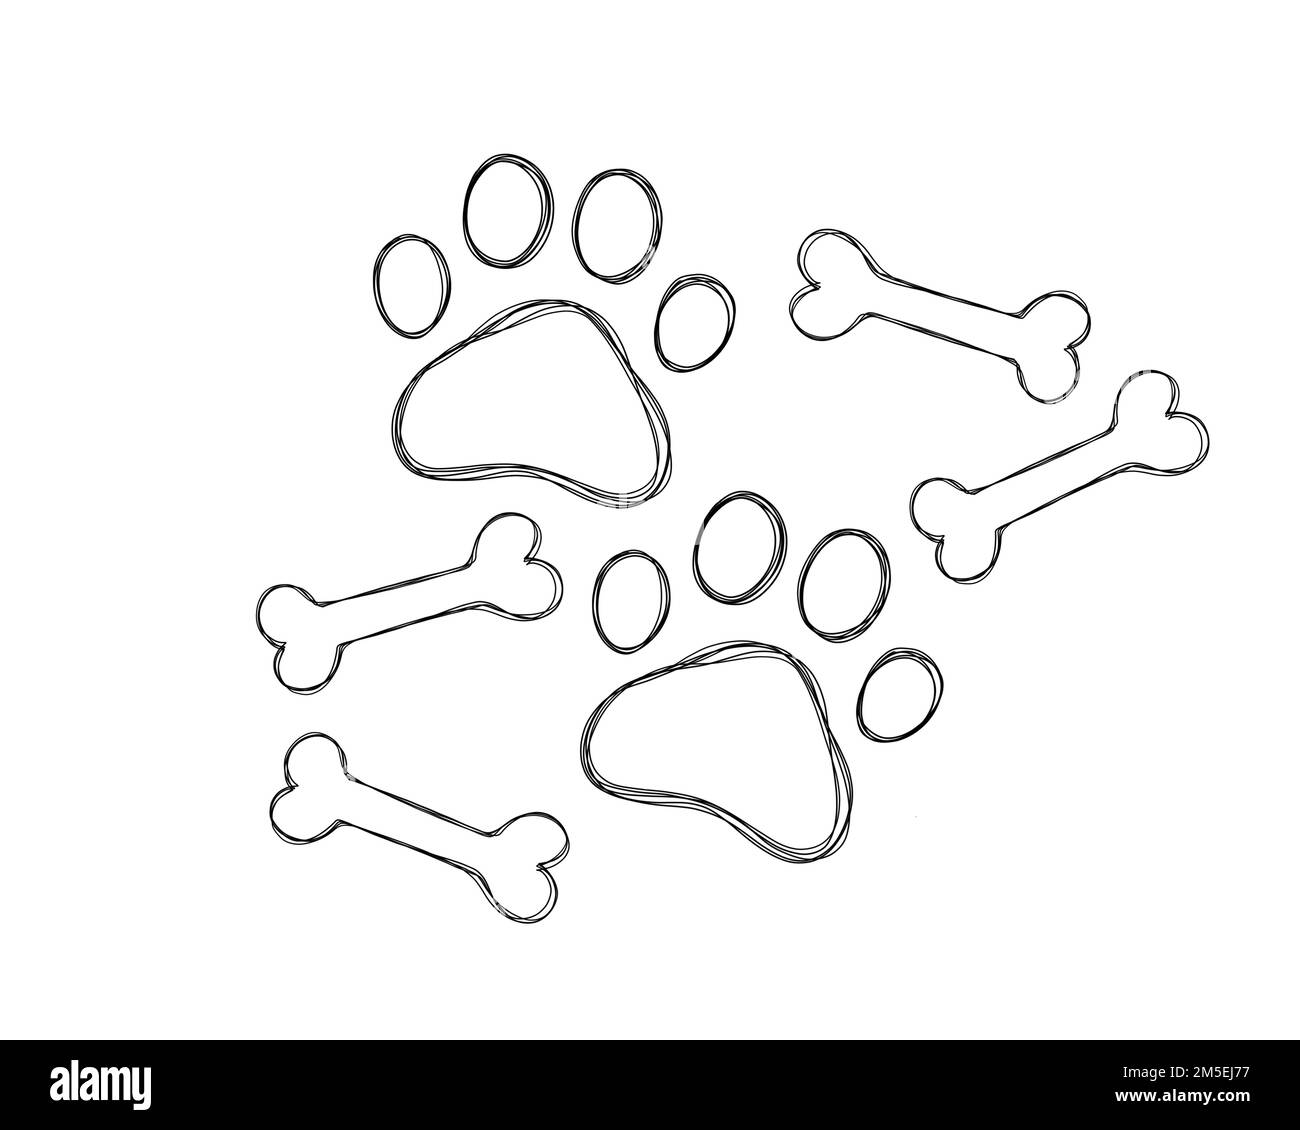 How To Draw Cartoon Dog Paws — everyonelovescartoons.com